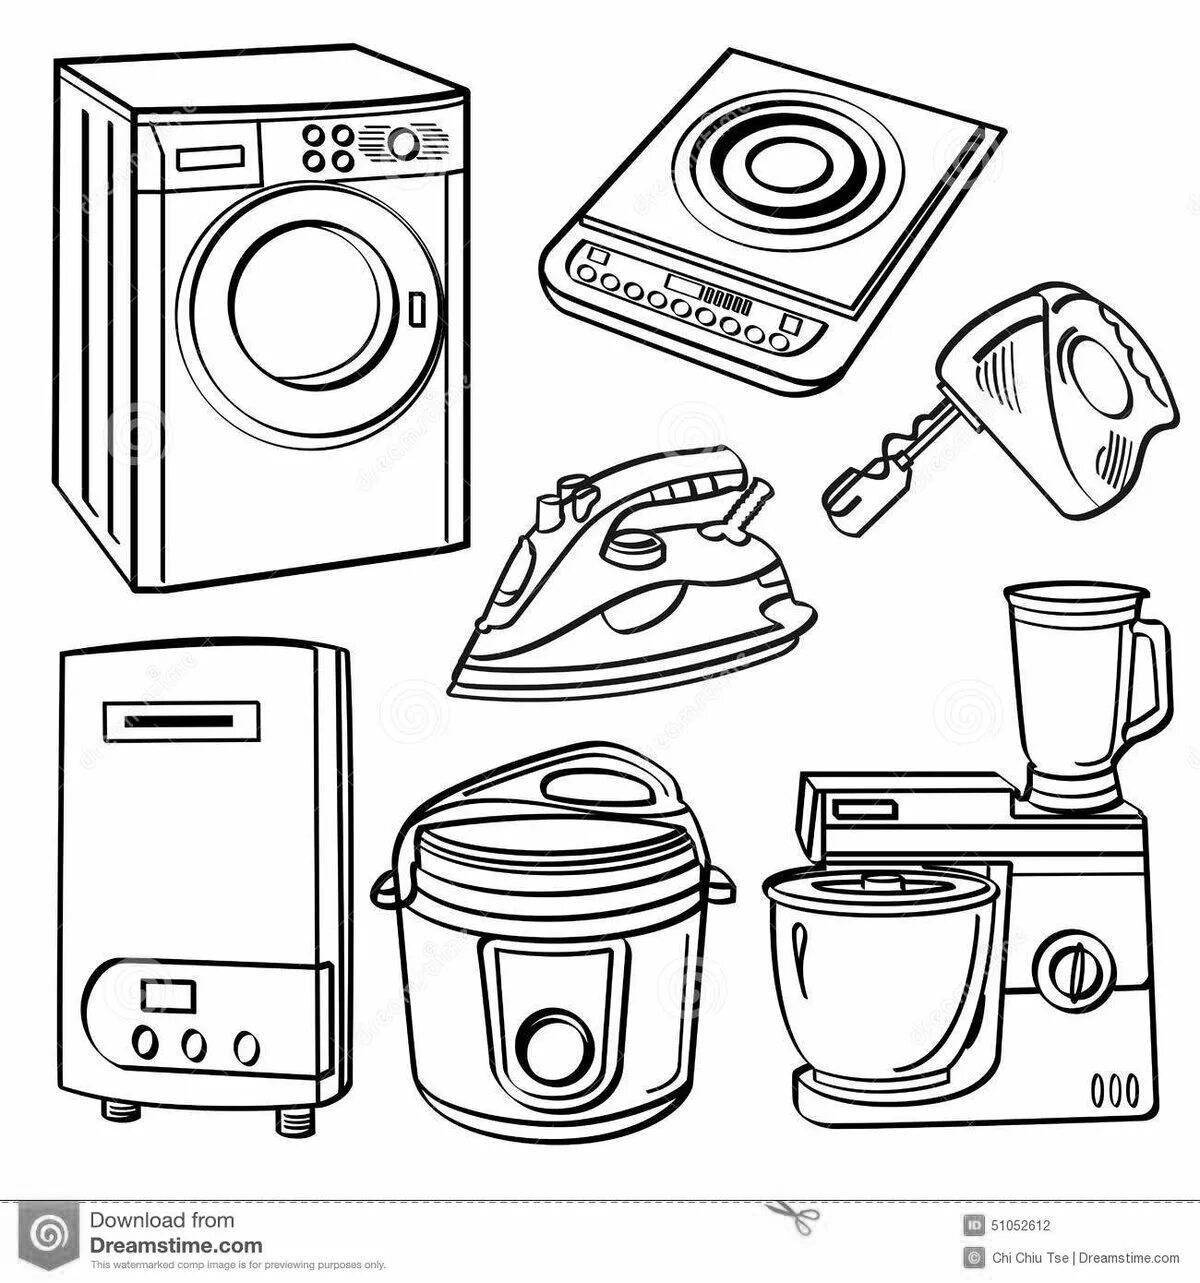 Children's appliances #16